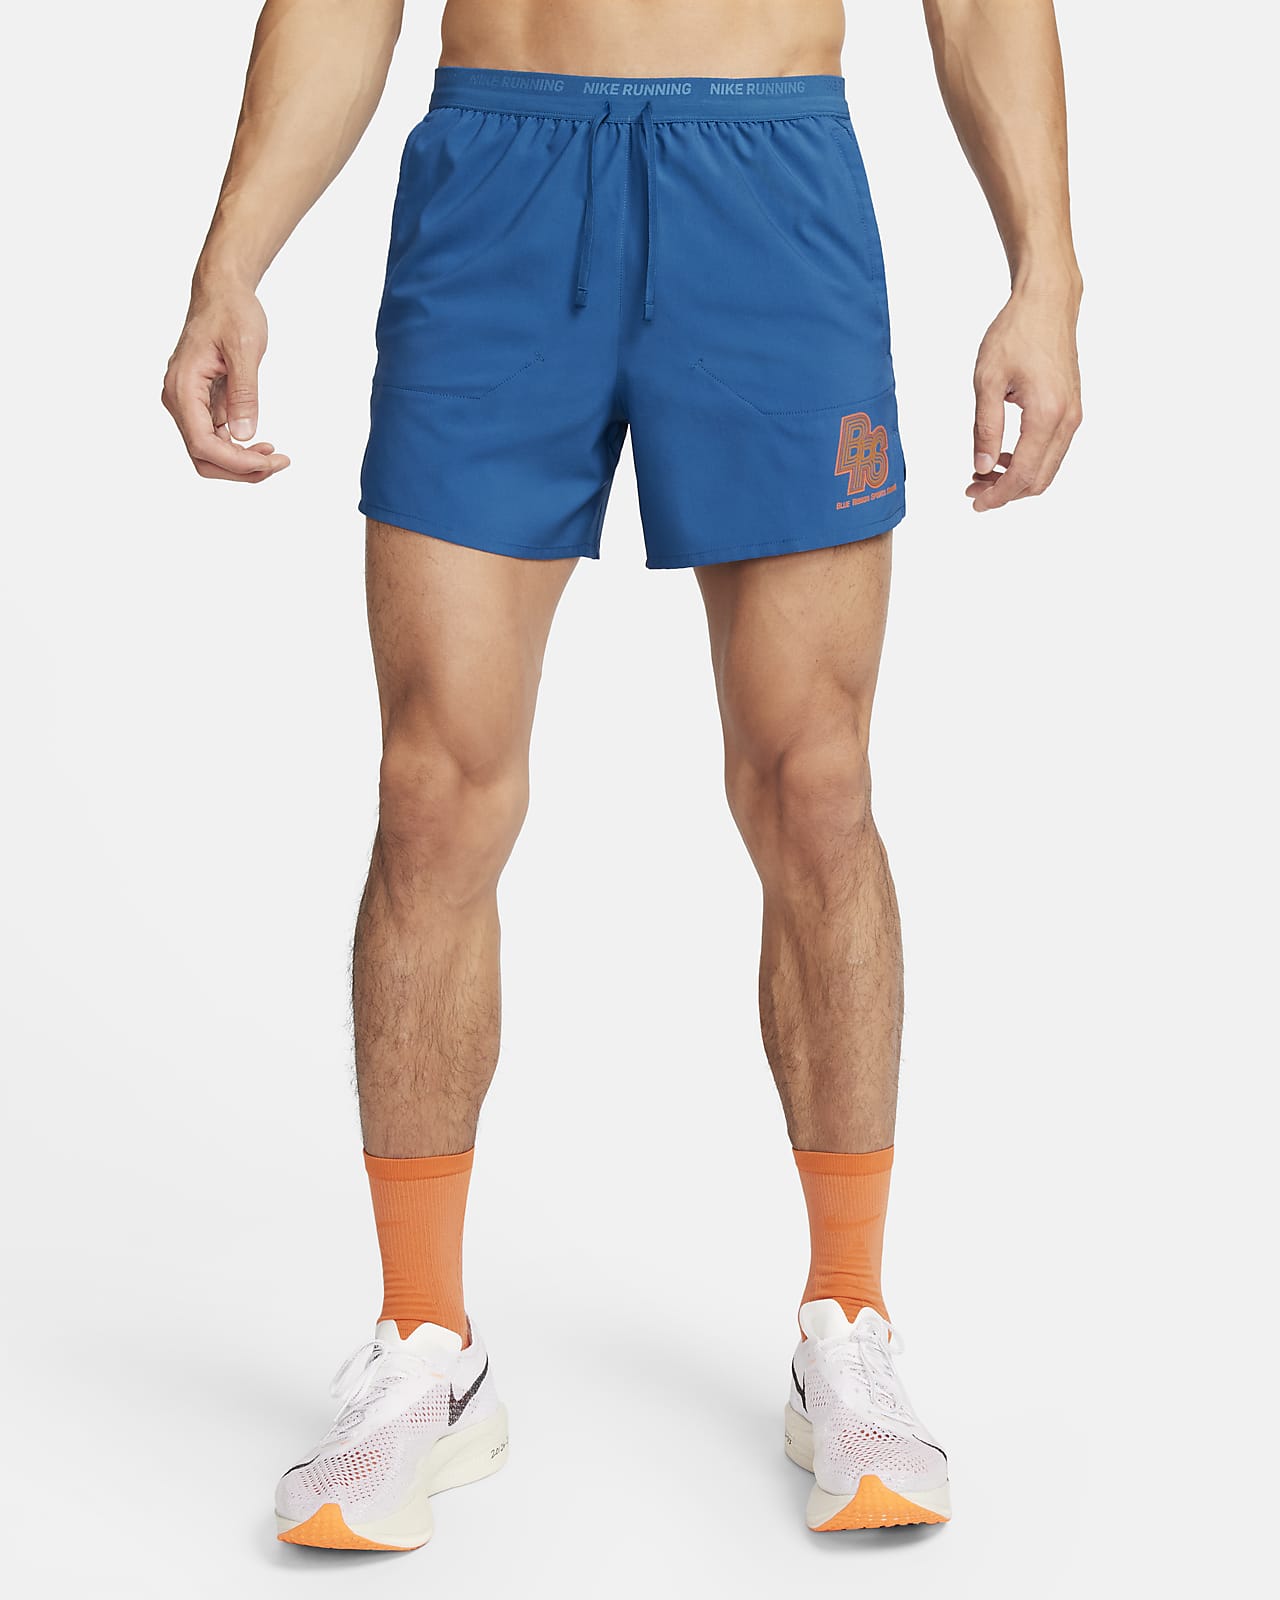 Short de running avec sous-short intégré 13 cm Nike Running Energy Stride pour homme